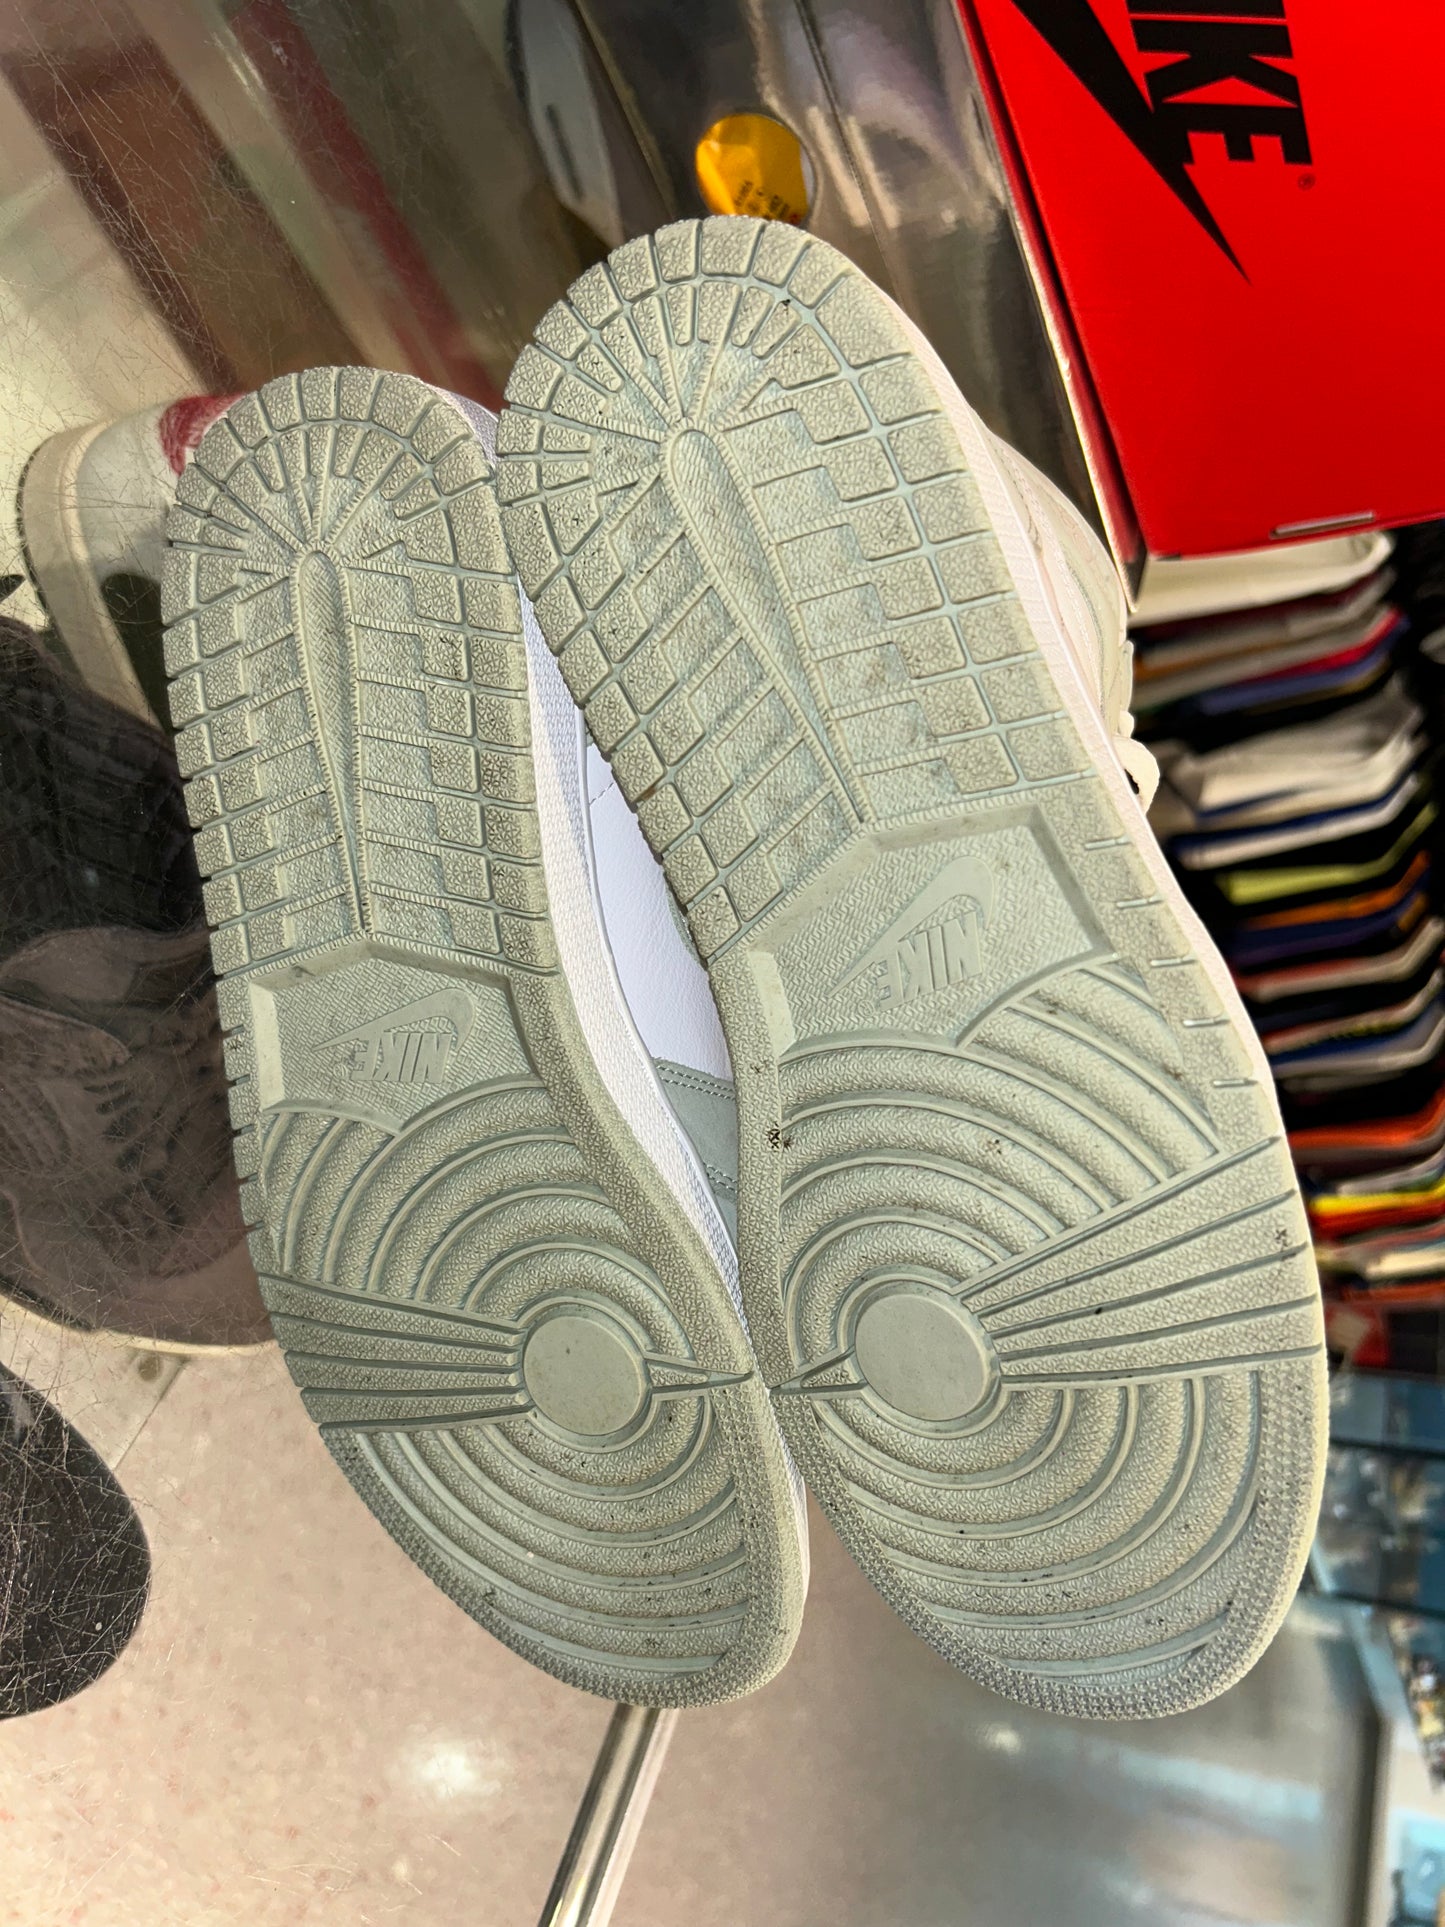 Size 9 (10.5W) Air Jordan 1 “Seafoam” (Mall)